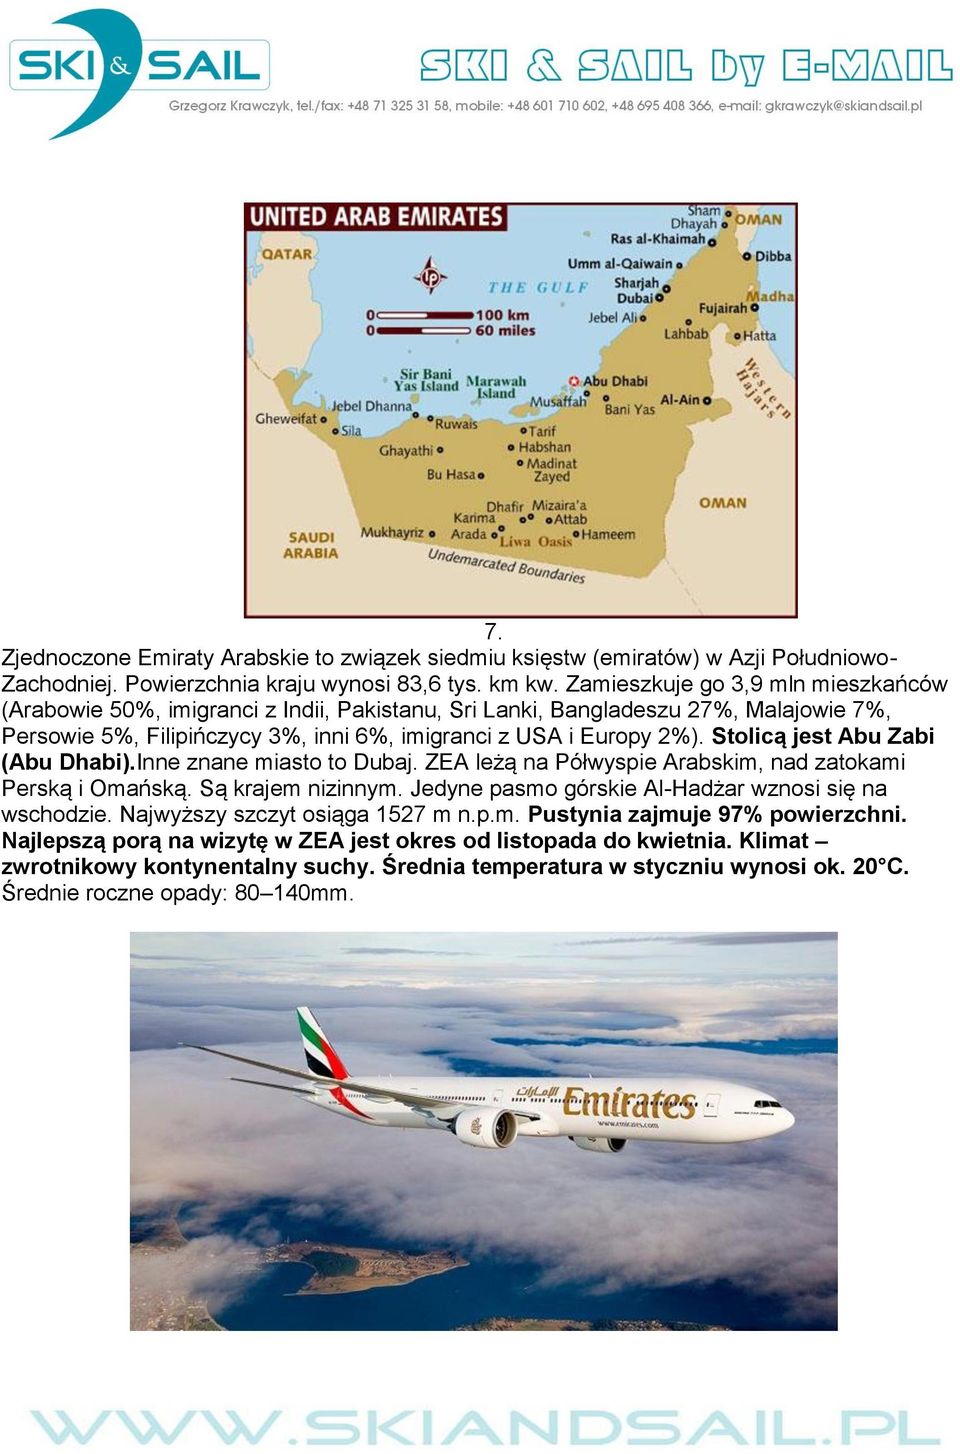 Stolicą jest Abu Zabi (Abu Dhabi).Inne znane miasto to Dubaj. ZEA leżą na Półwyspie Arabskim, nad zatokami Perską i Omańską. Są krajem nizinnym.